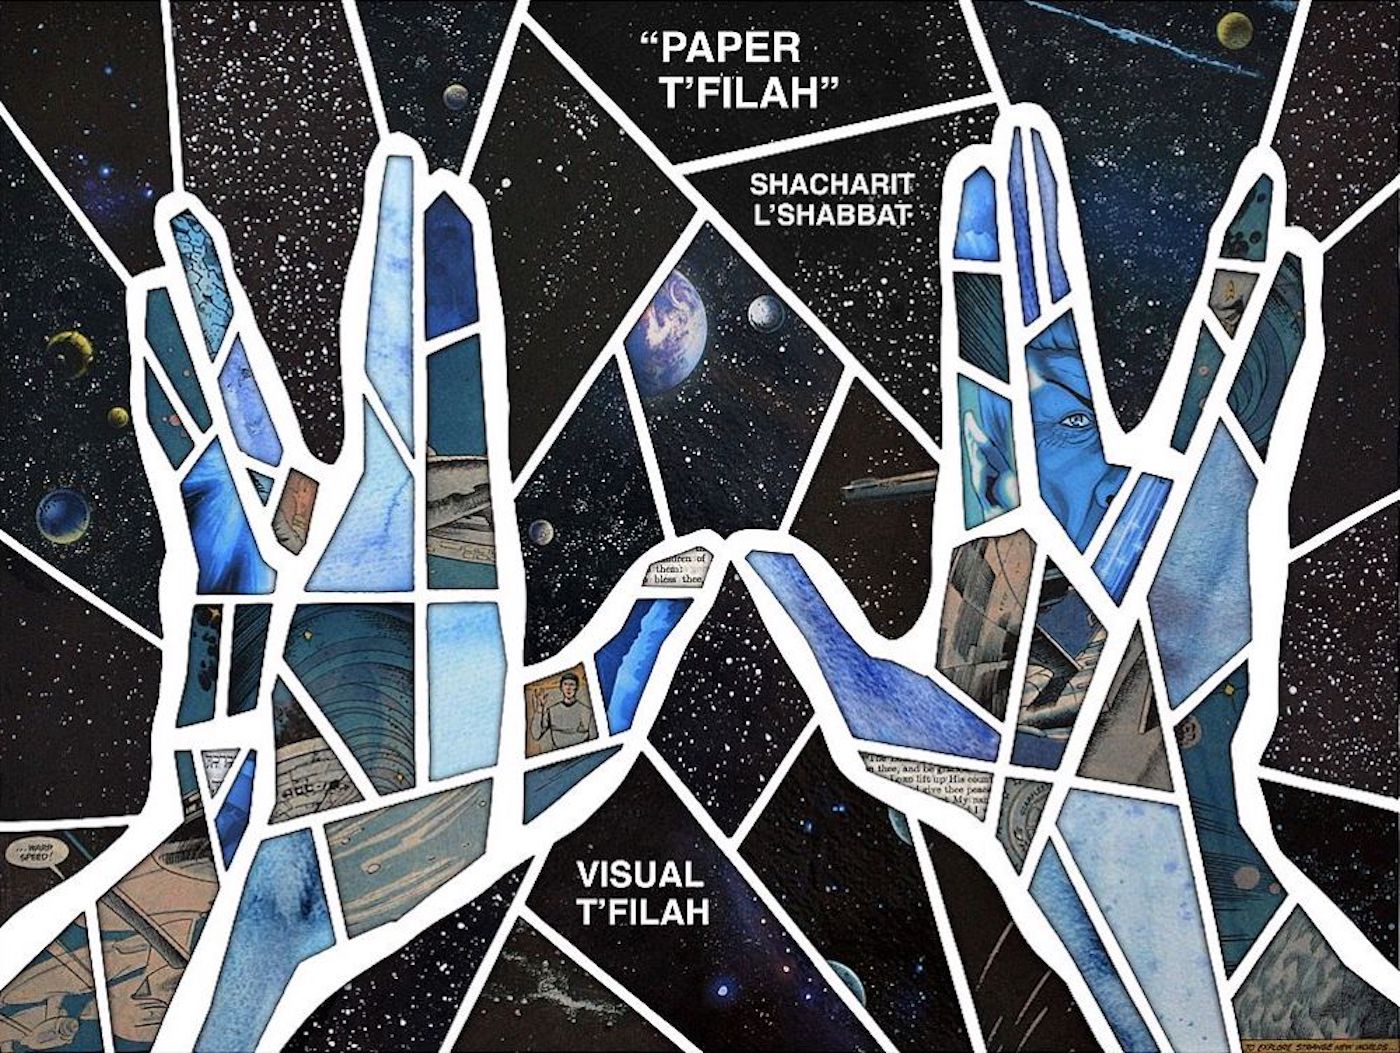 Paper T'filah by Visual T'filah - All